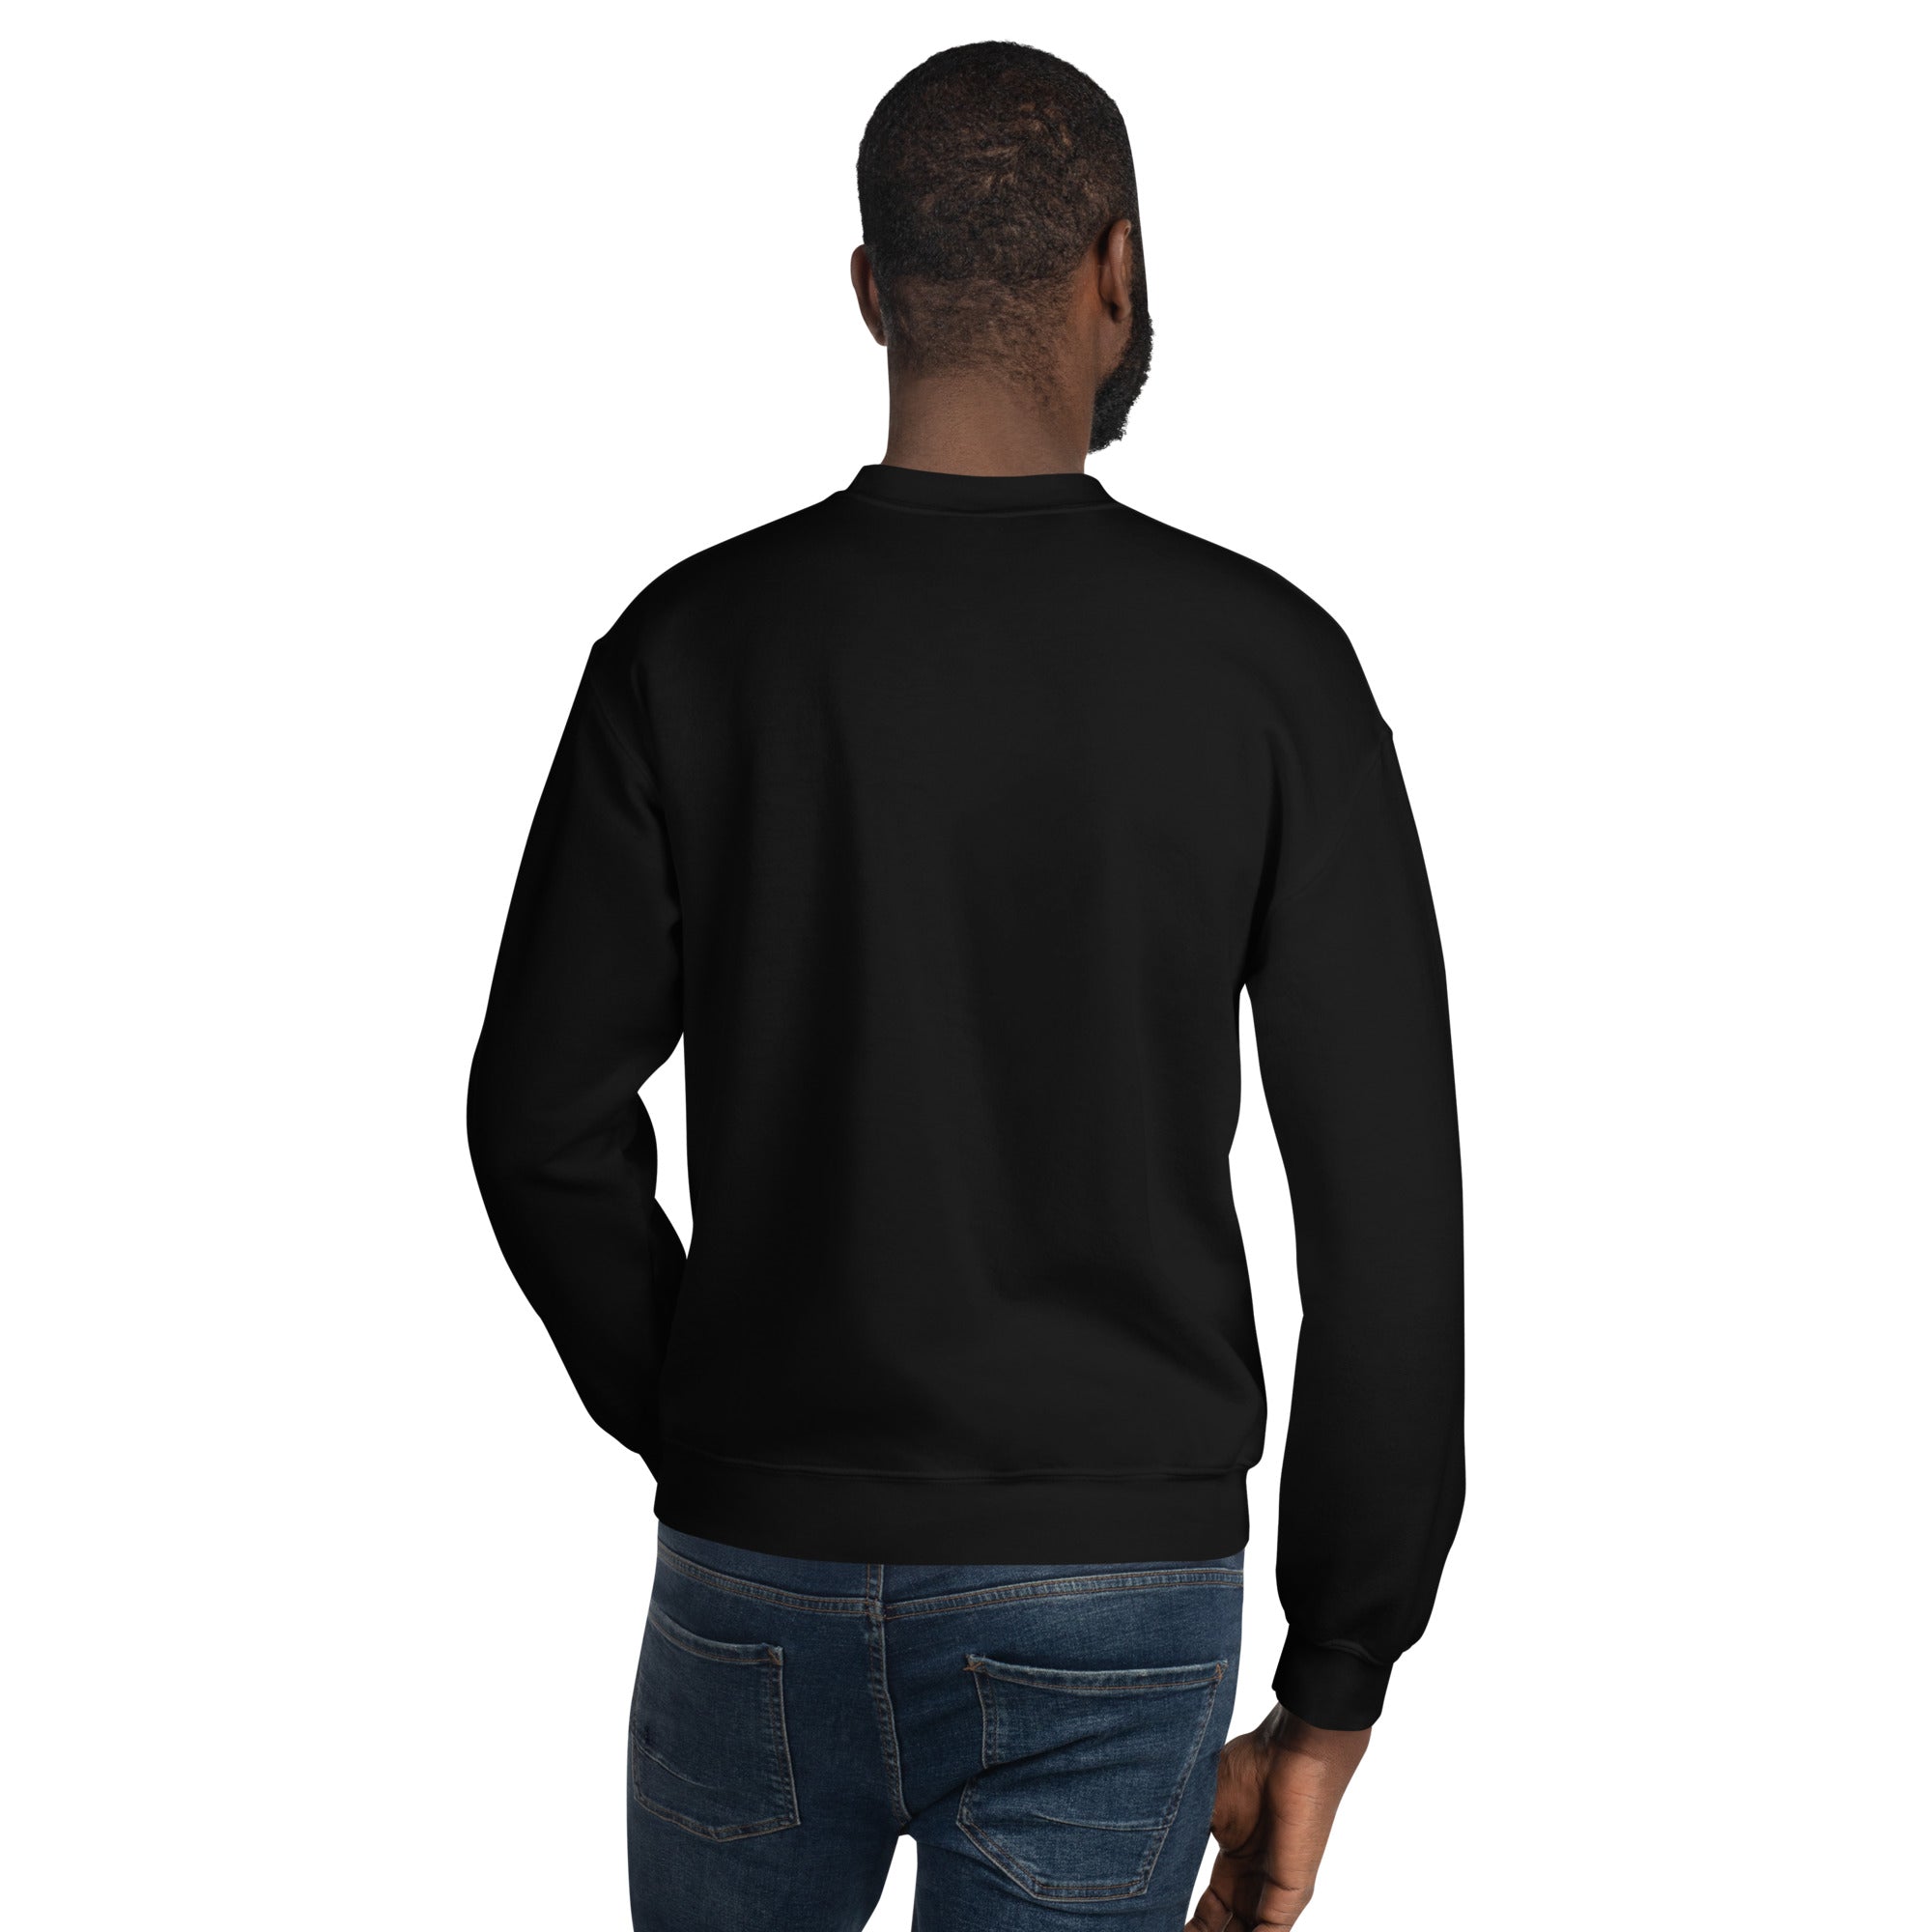 The Unisex Sweatshirt